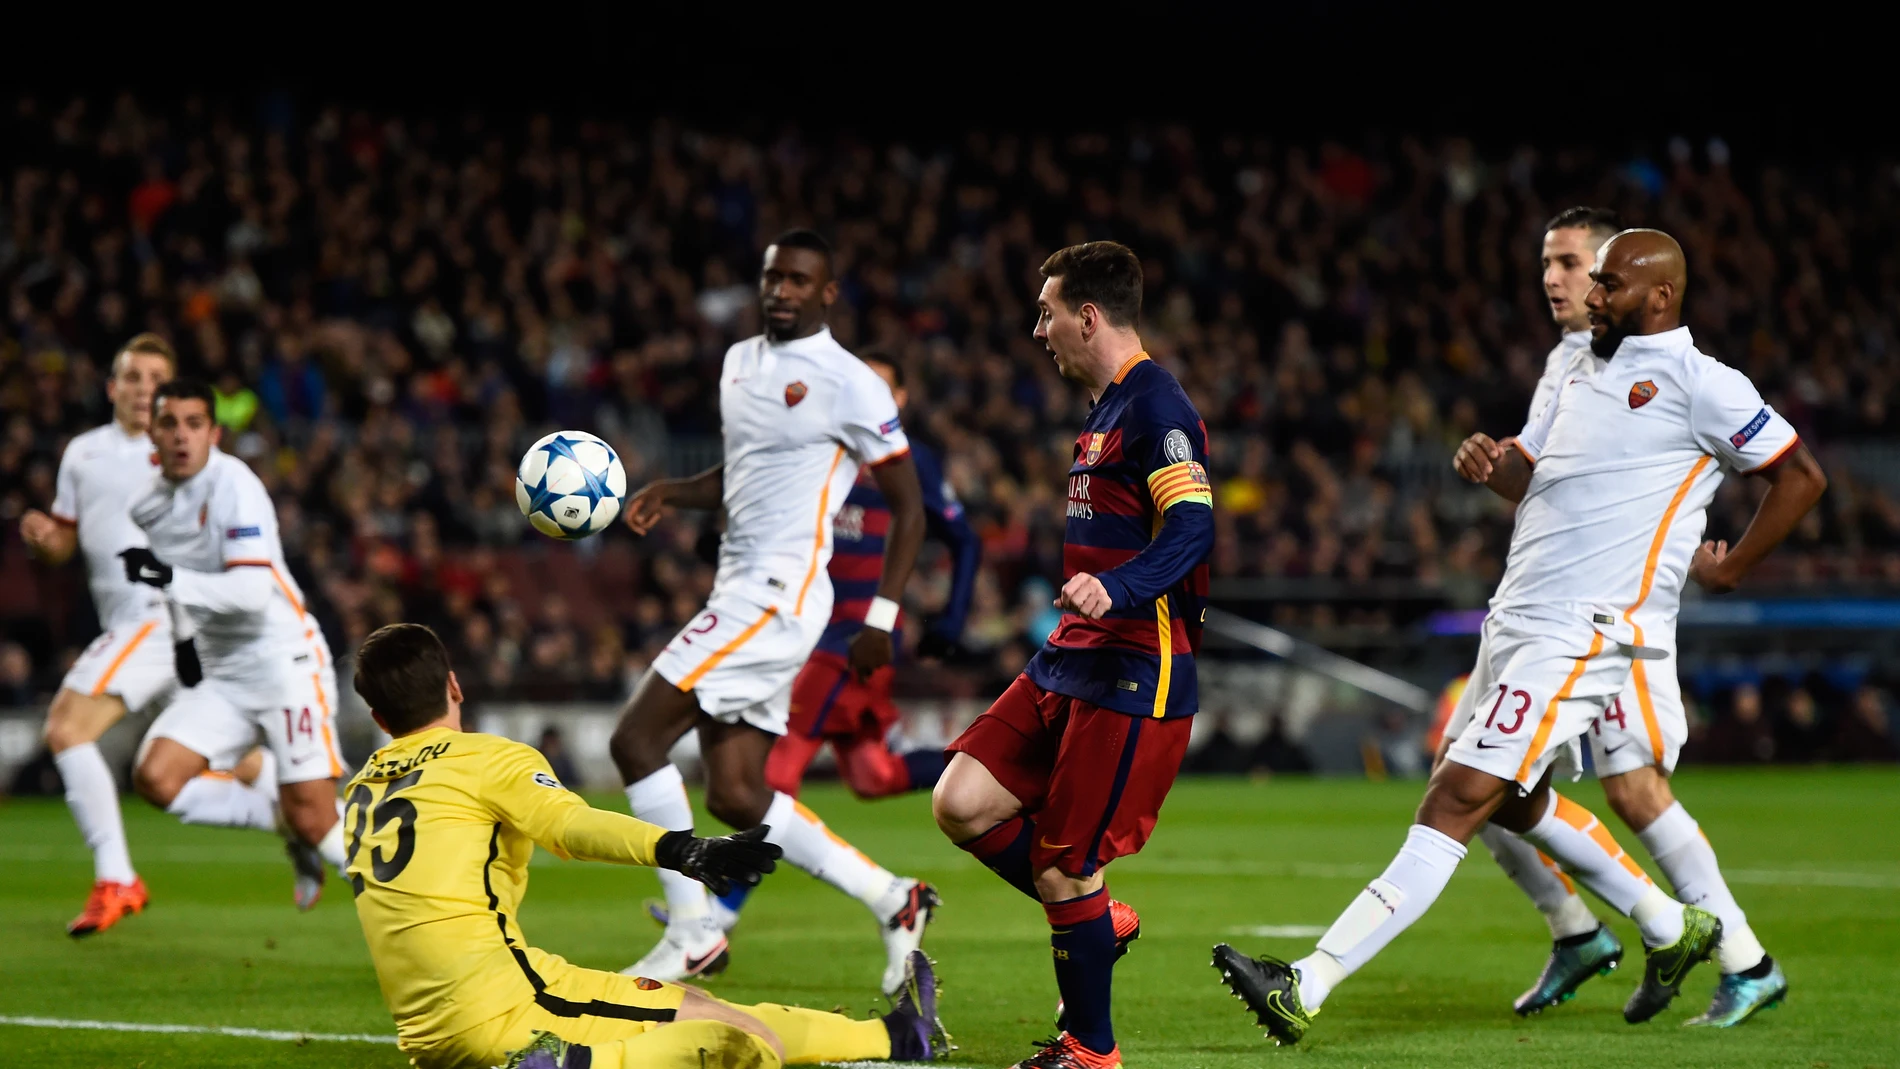 Messi pica el balón ante la Roma para lograr el segundo gol del partido